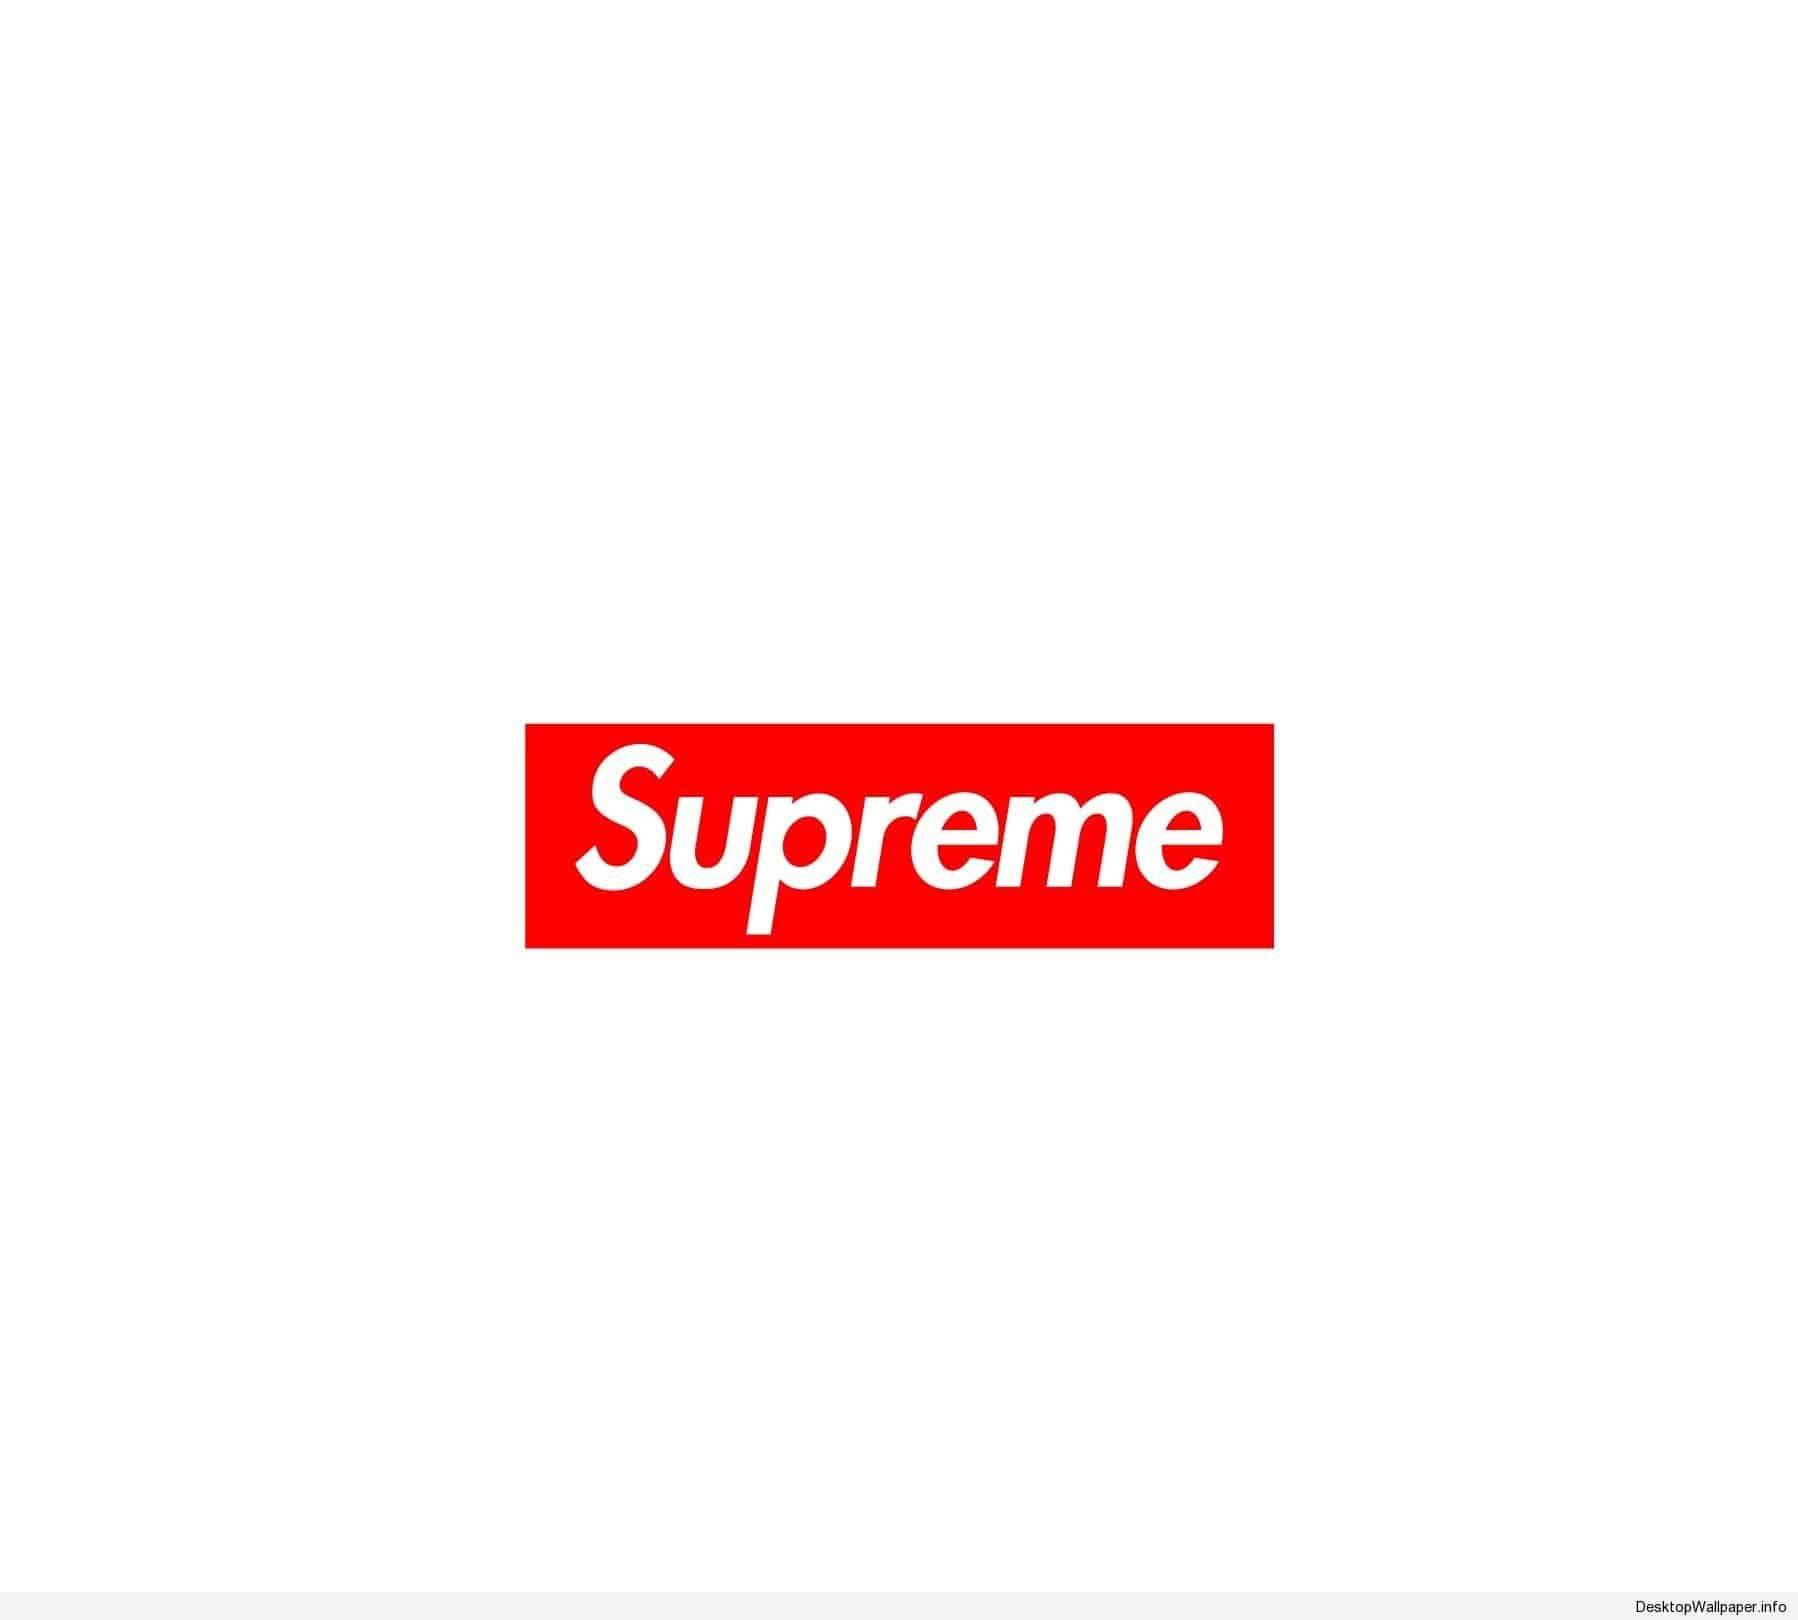 Snke Supreme Box Logo - HD Wallpaper. Logo wallpaper